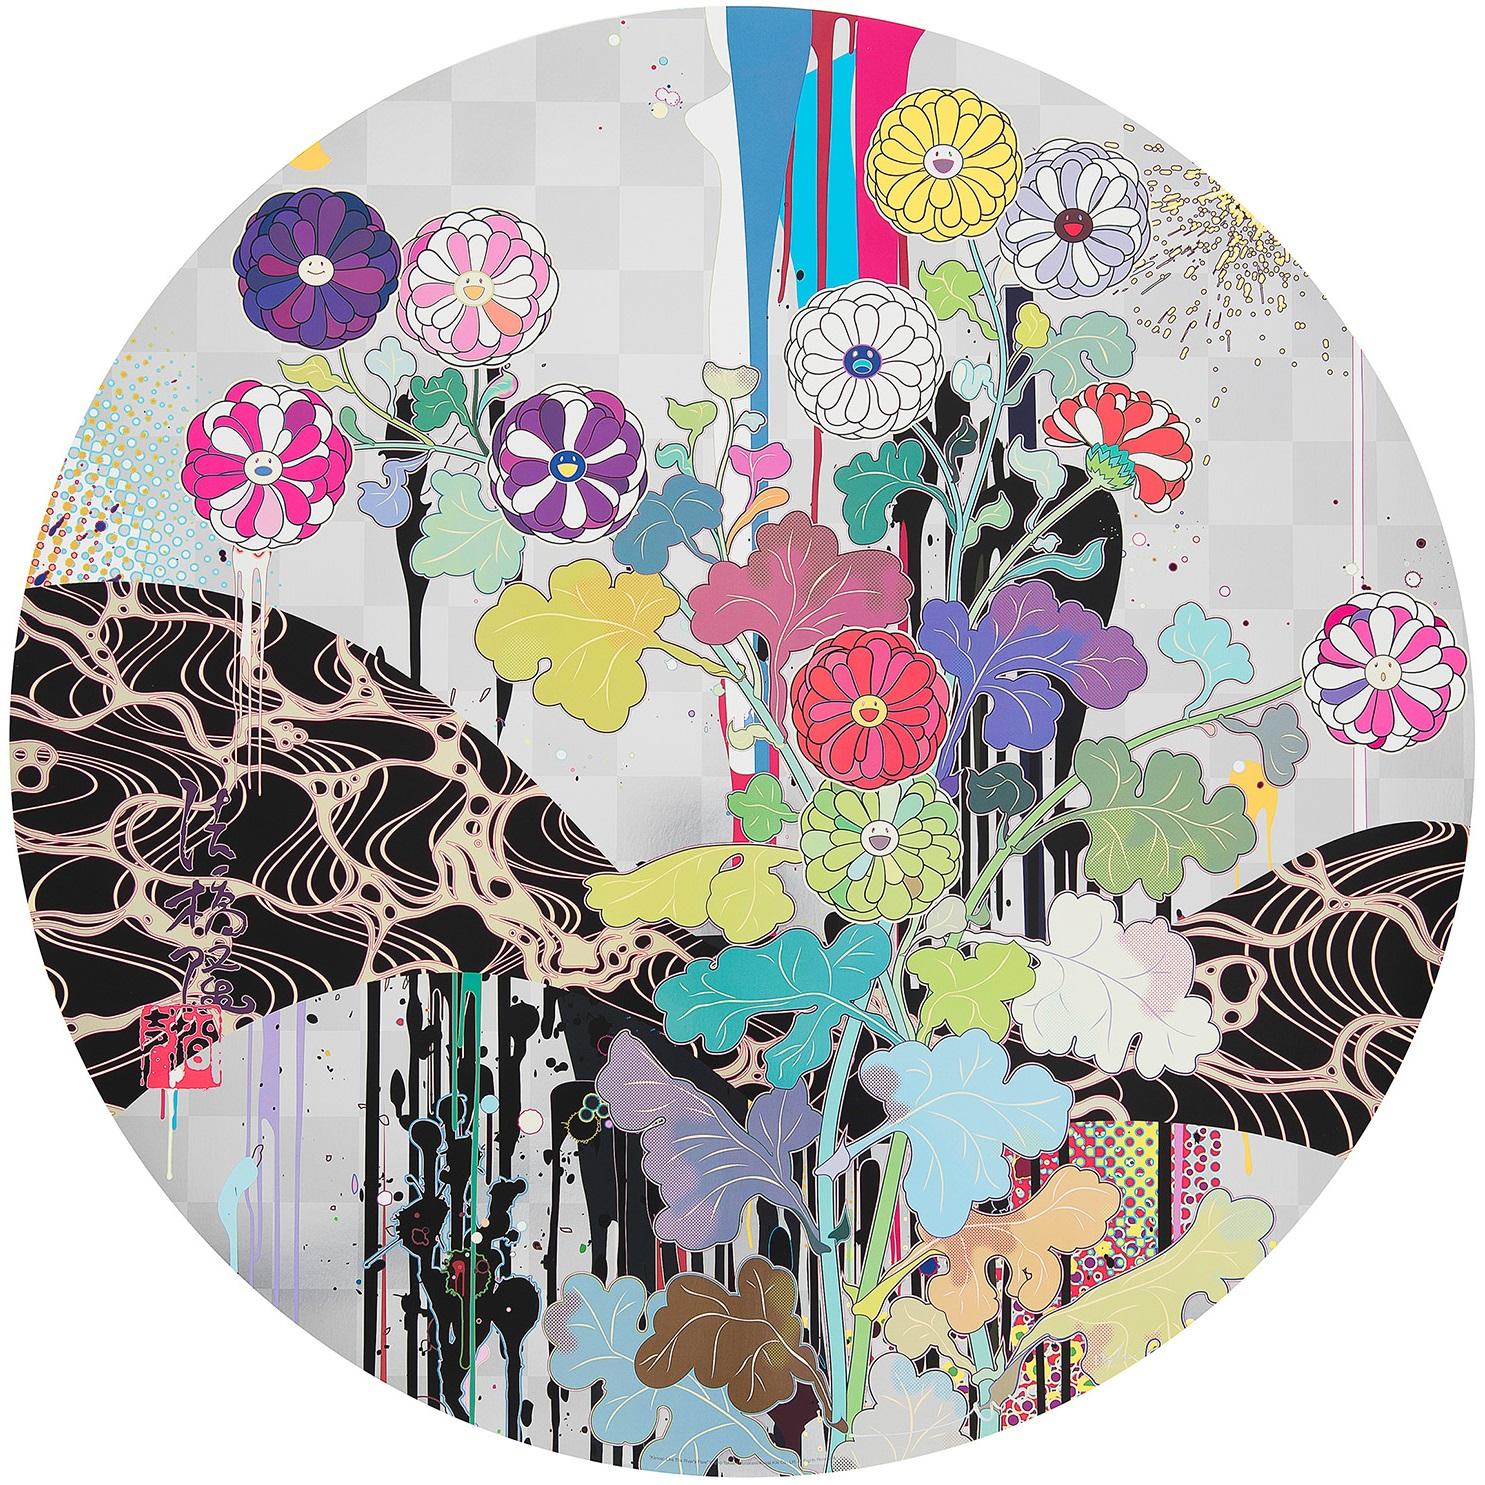 Kansei: Wie das Fließen des Flusses
2010 von Takashi Murakami
Offsetdruck, Kaltprägung und Hochglanzlackierung mit Silberfarbe
signiert, nummeriert und gestempelt durch den Künstler
27 7/8 im Durchmesser
71 cm Durchmesser
Ausgabe  34/300

Takashi